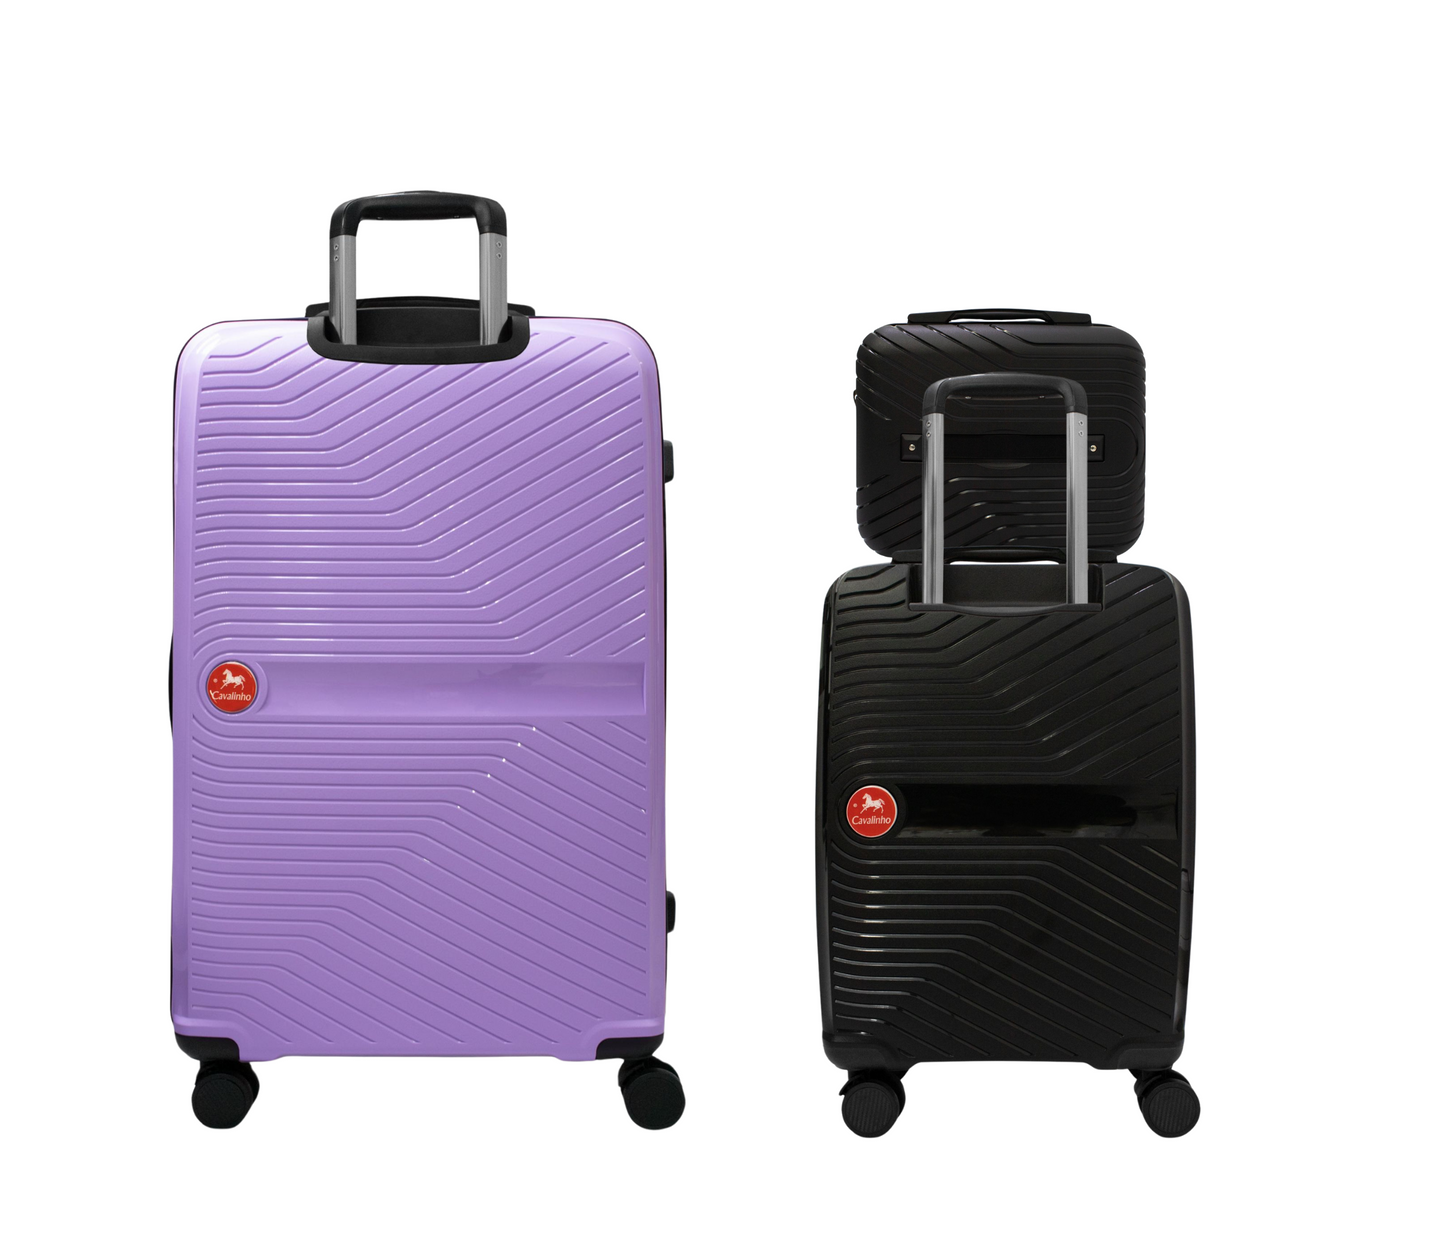 Cavalinho Canada & USA Colorful 3 Piece Luggage Set (15", 19" & 28") - Black Black Lilac - 68020004.010139.S151928._3